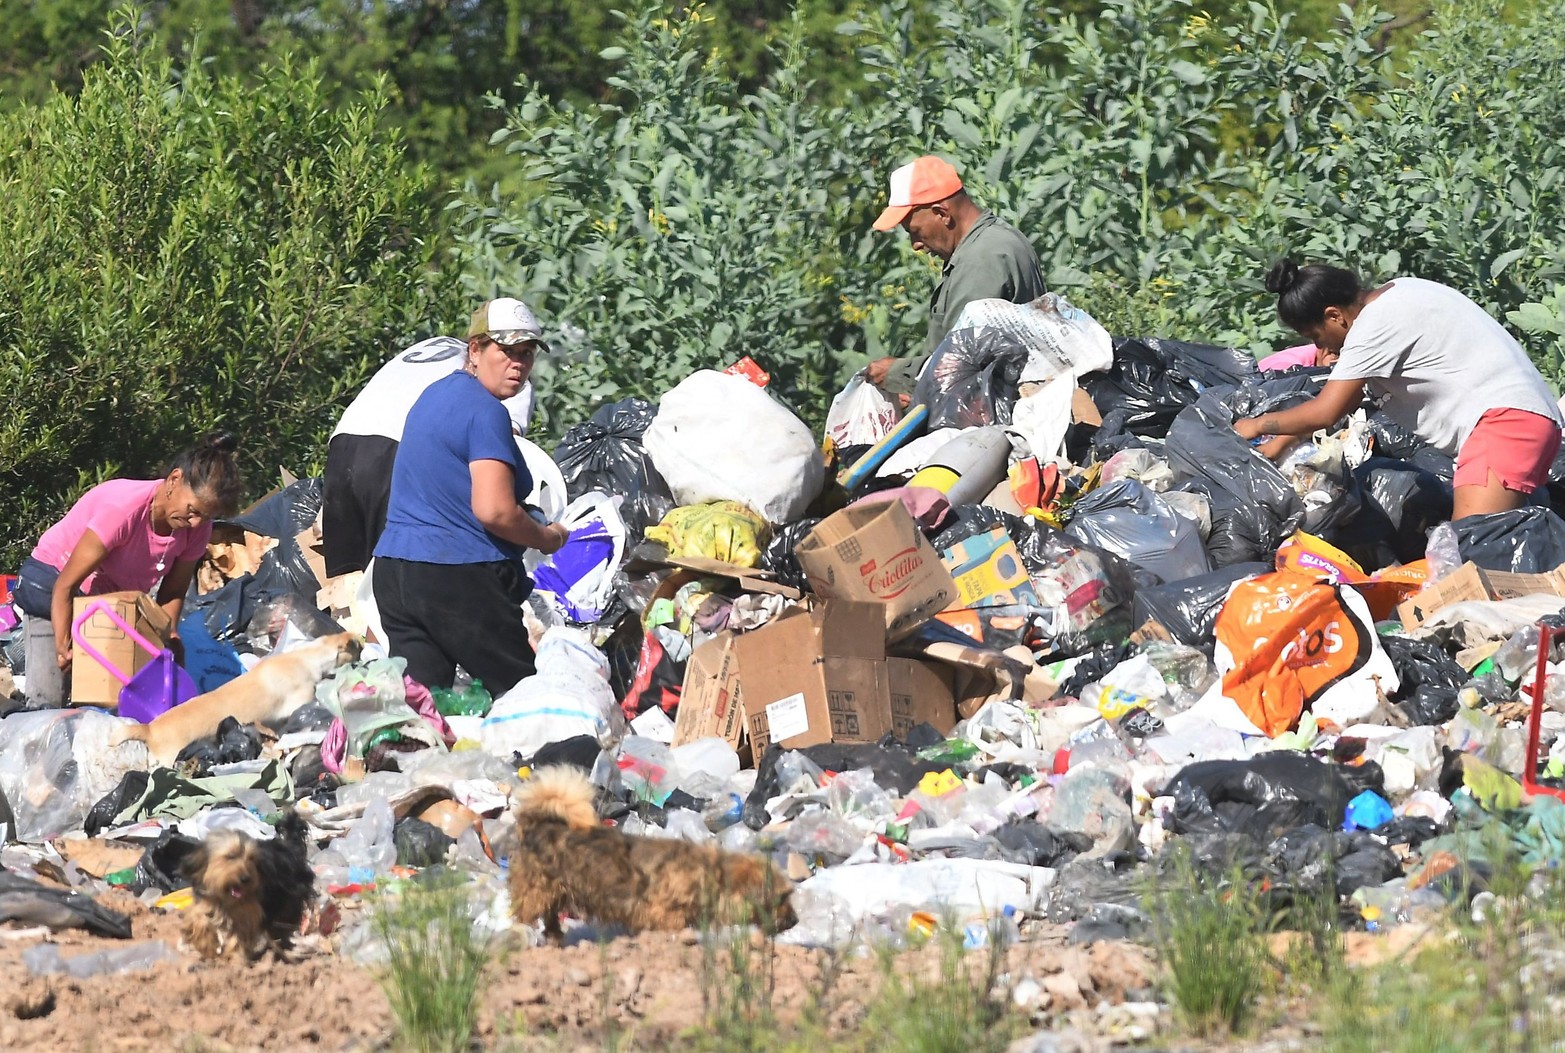 Contaminación. Vecinos revisan los residuos depositados en el basural que se inunda.